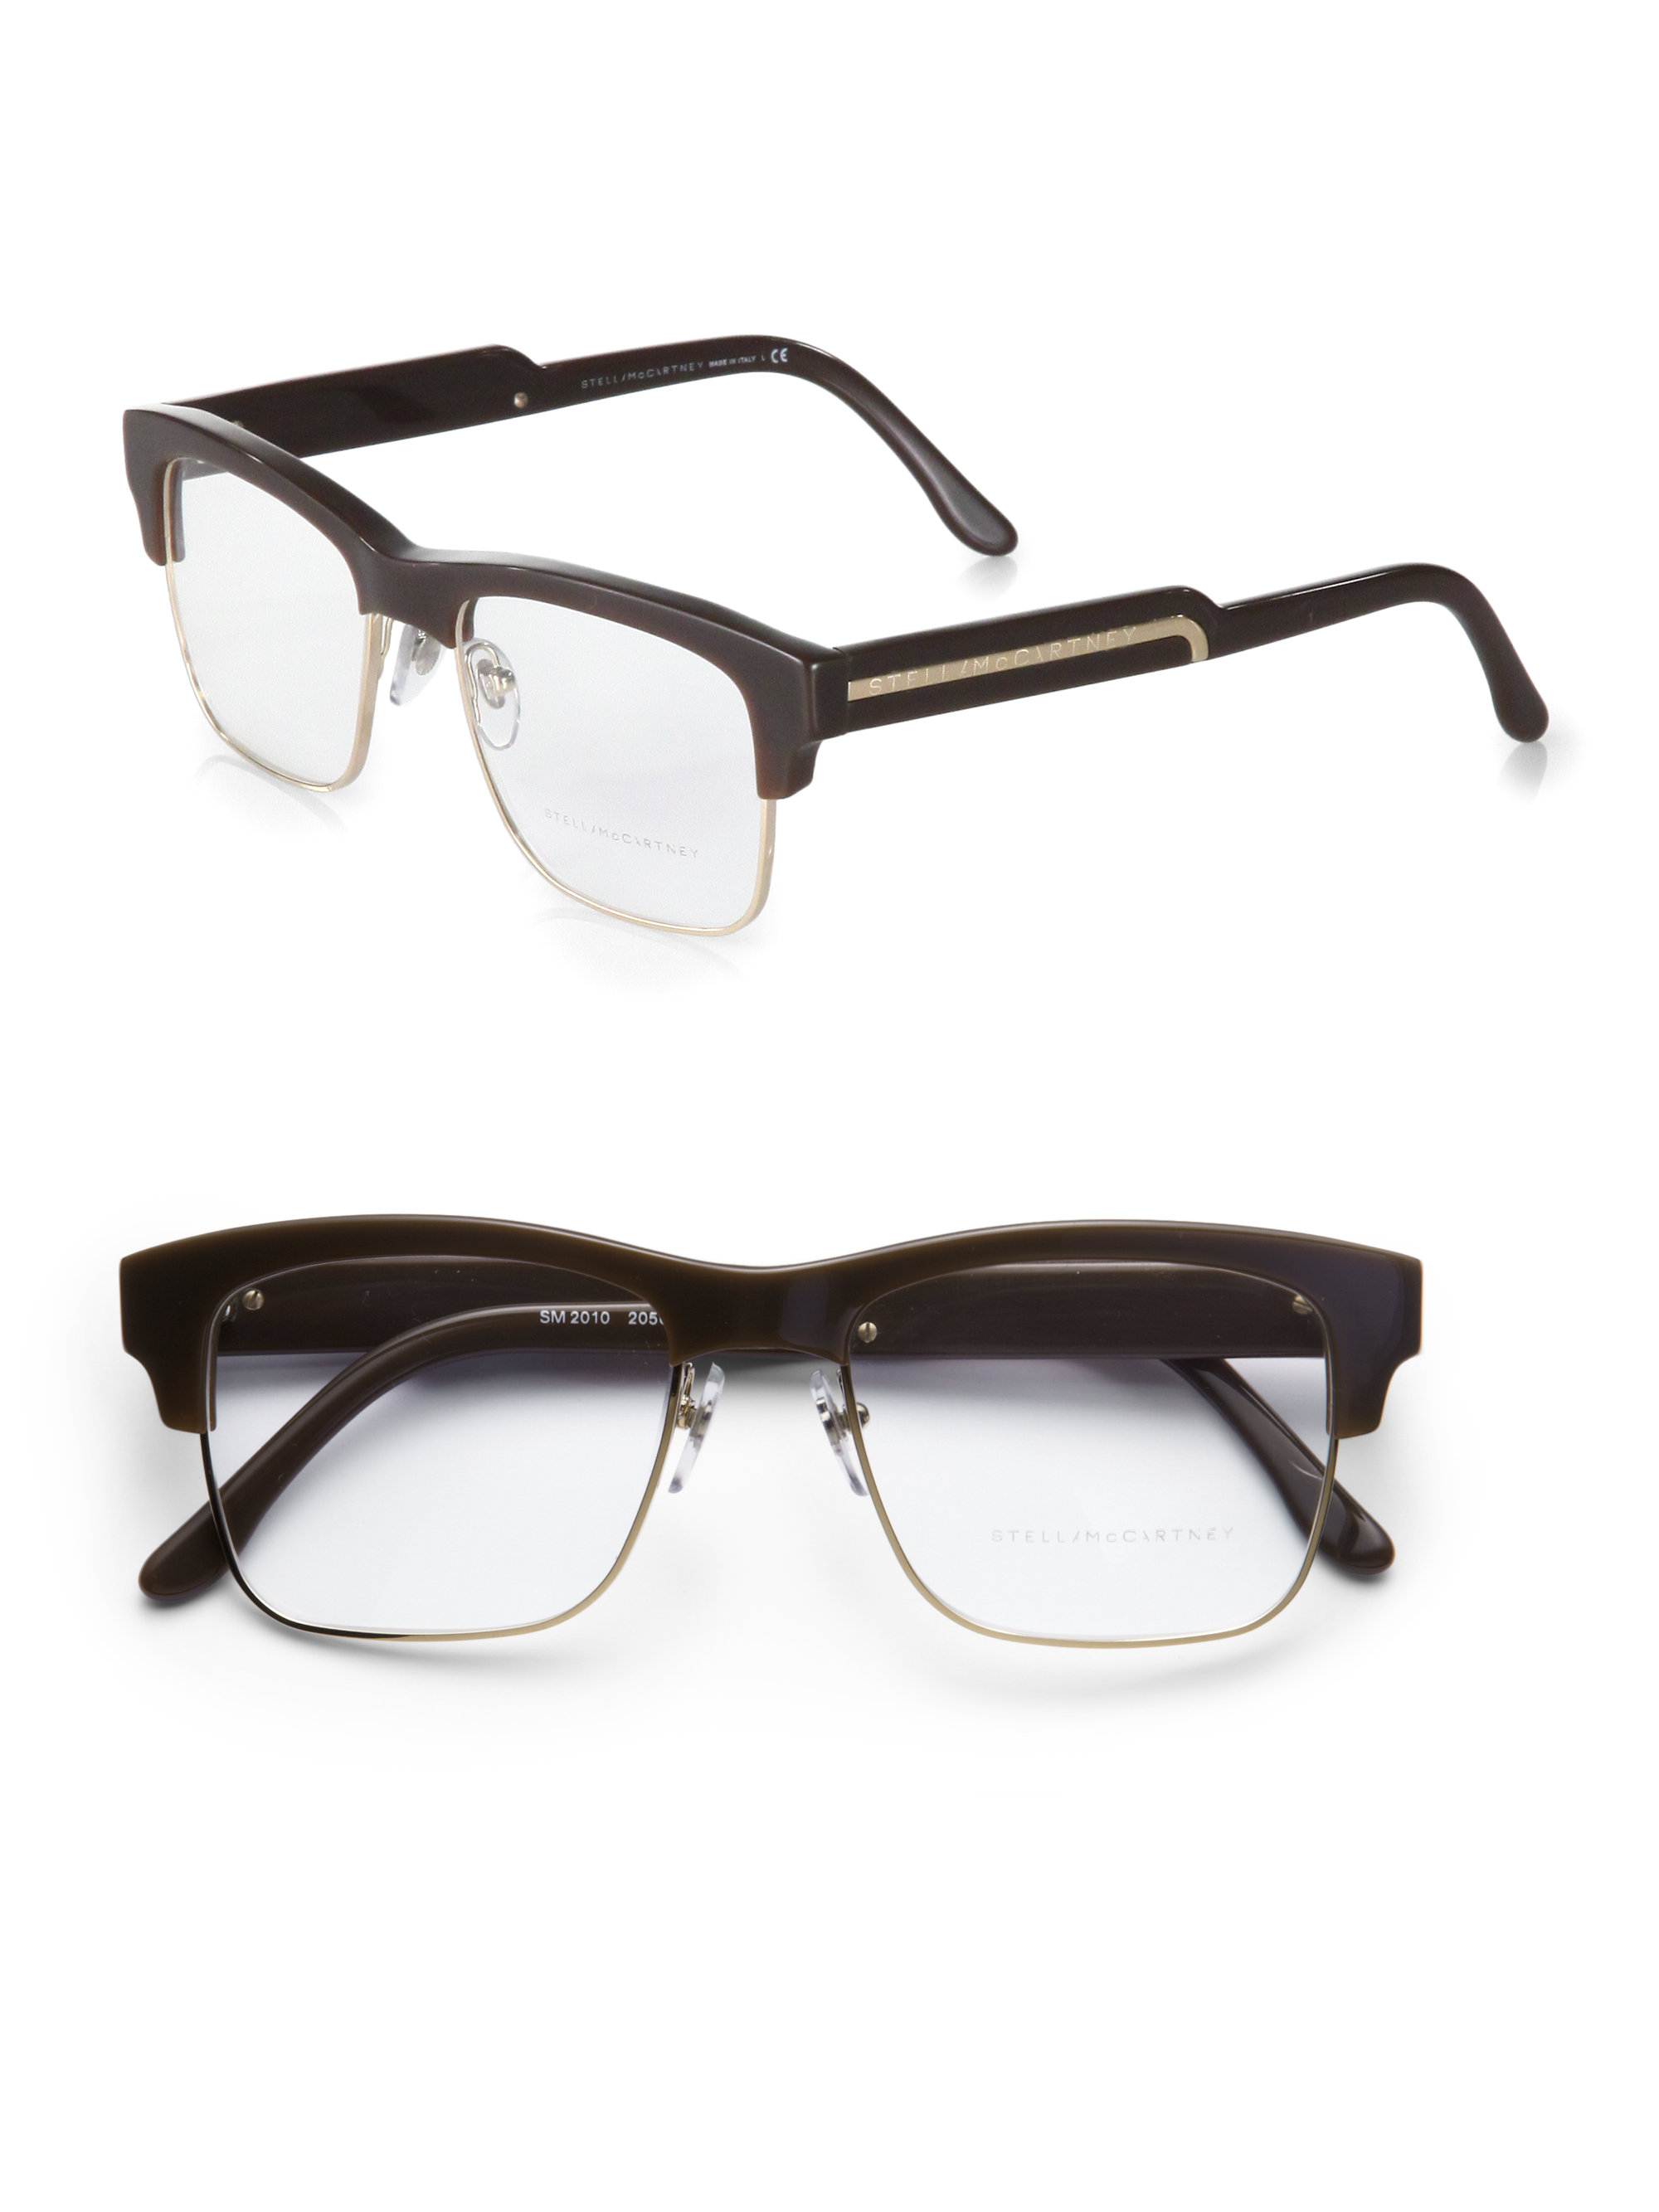 Lyst - Stella Mccartney Squared Acetate & Metal Eyeglasses in Brown